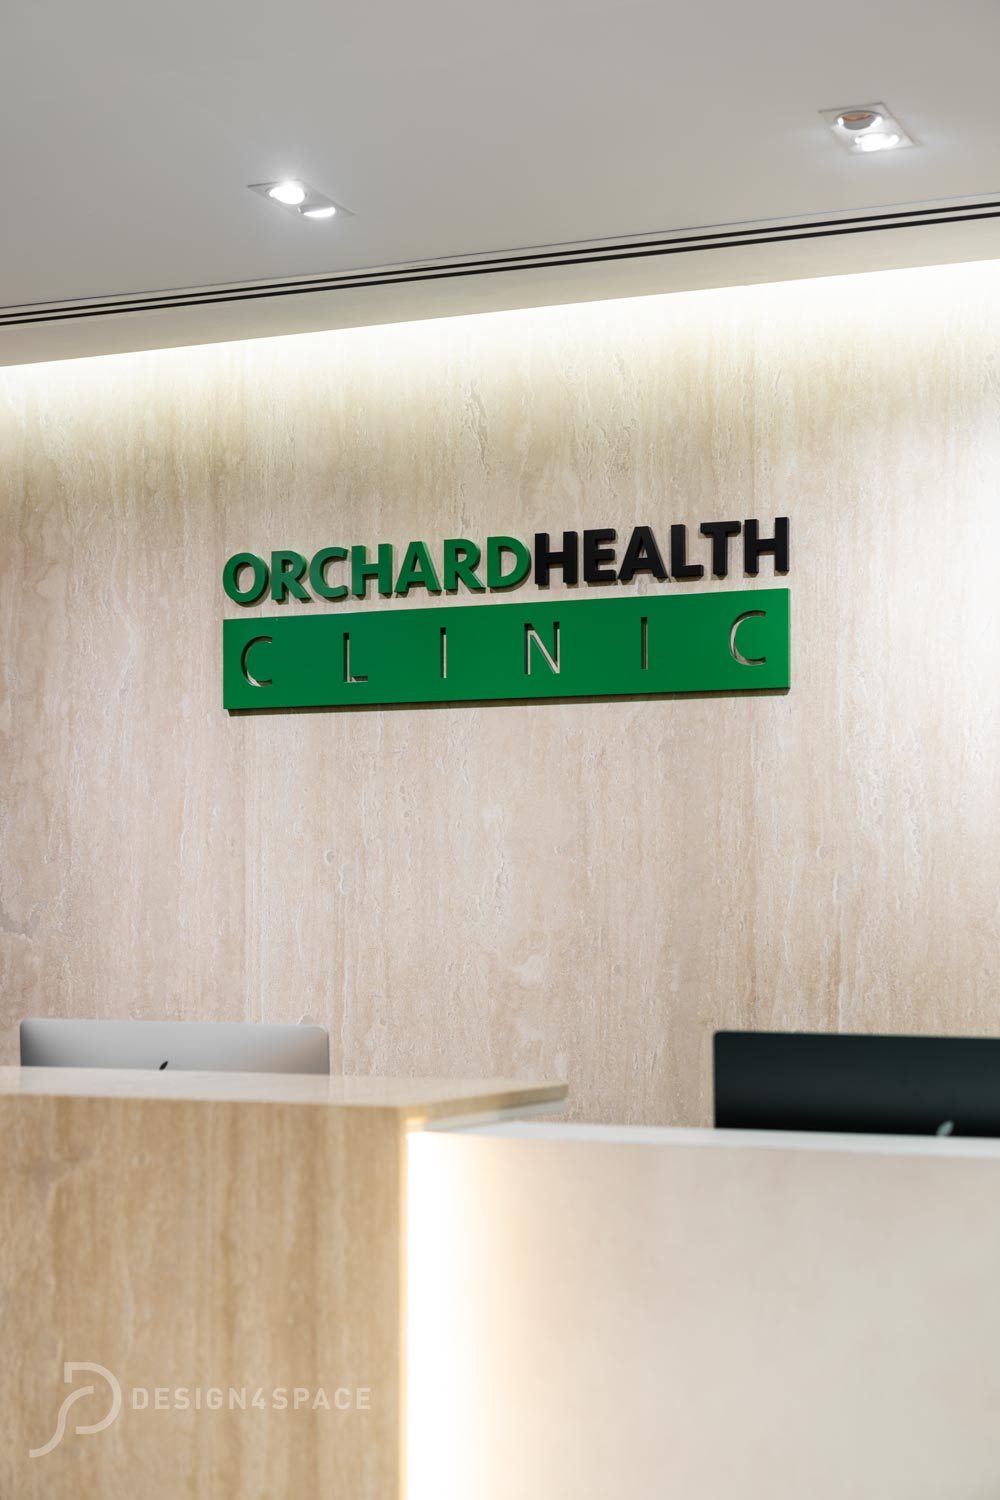 489 - orchard health clinic - jesslyn - watermark1